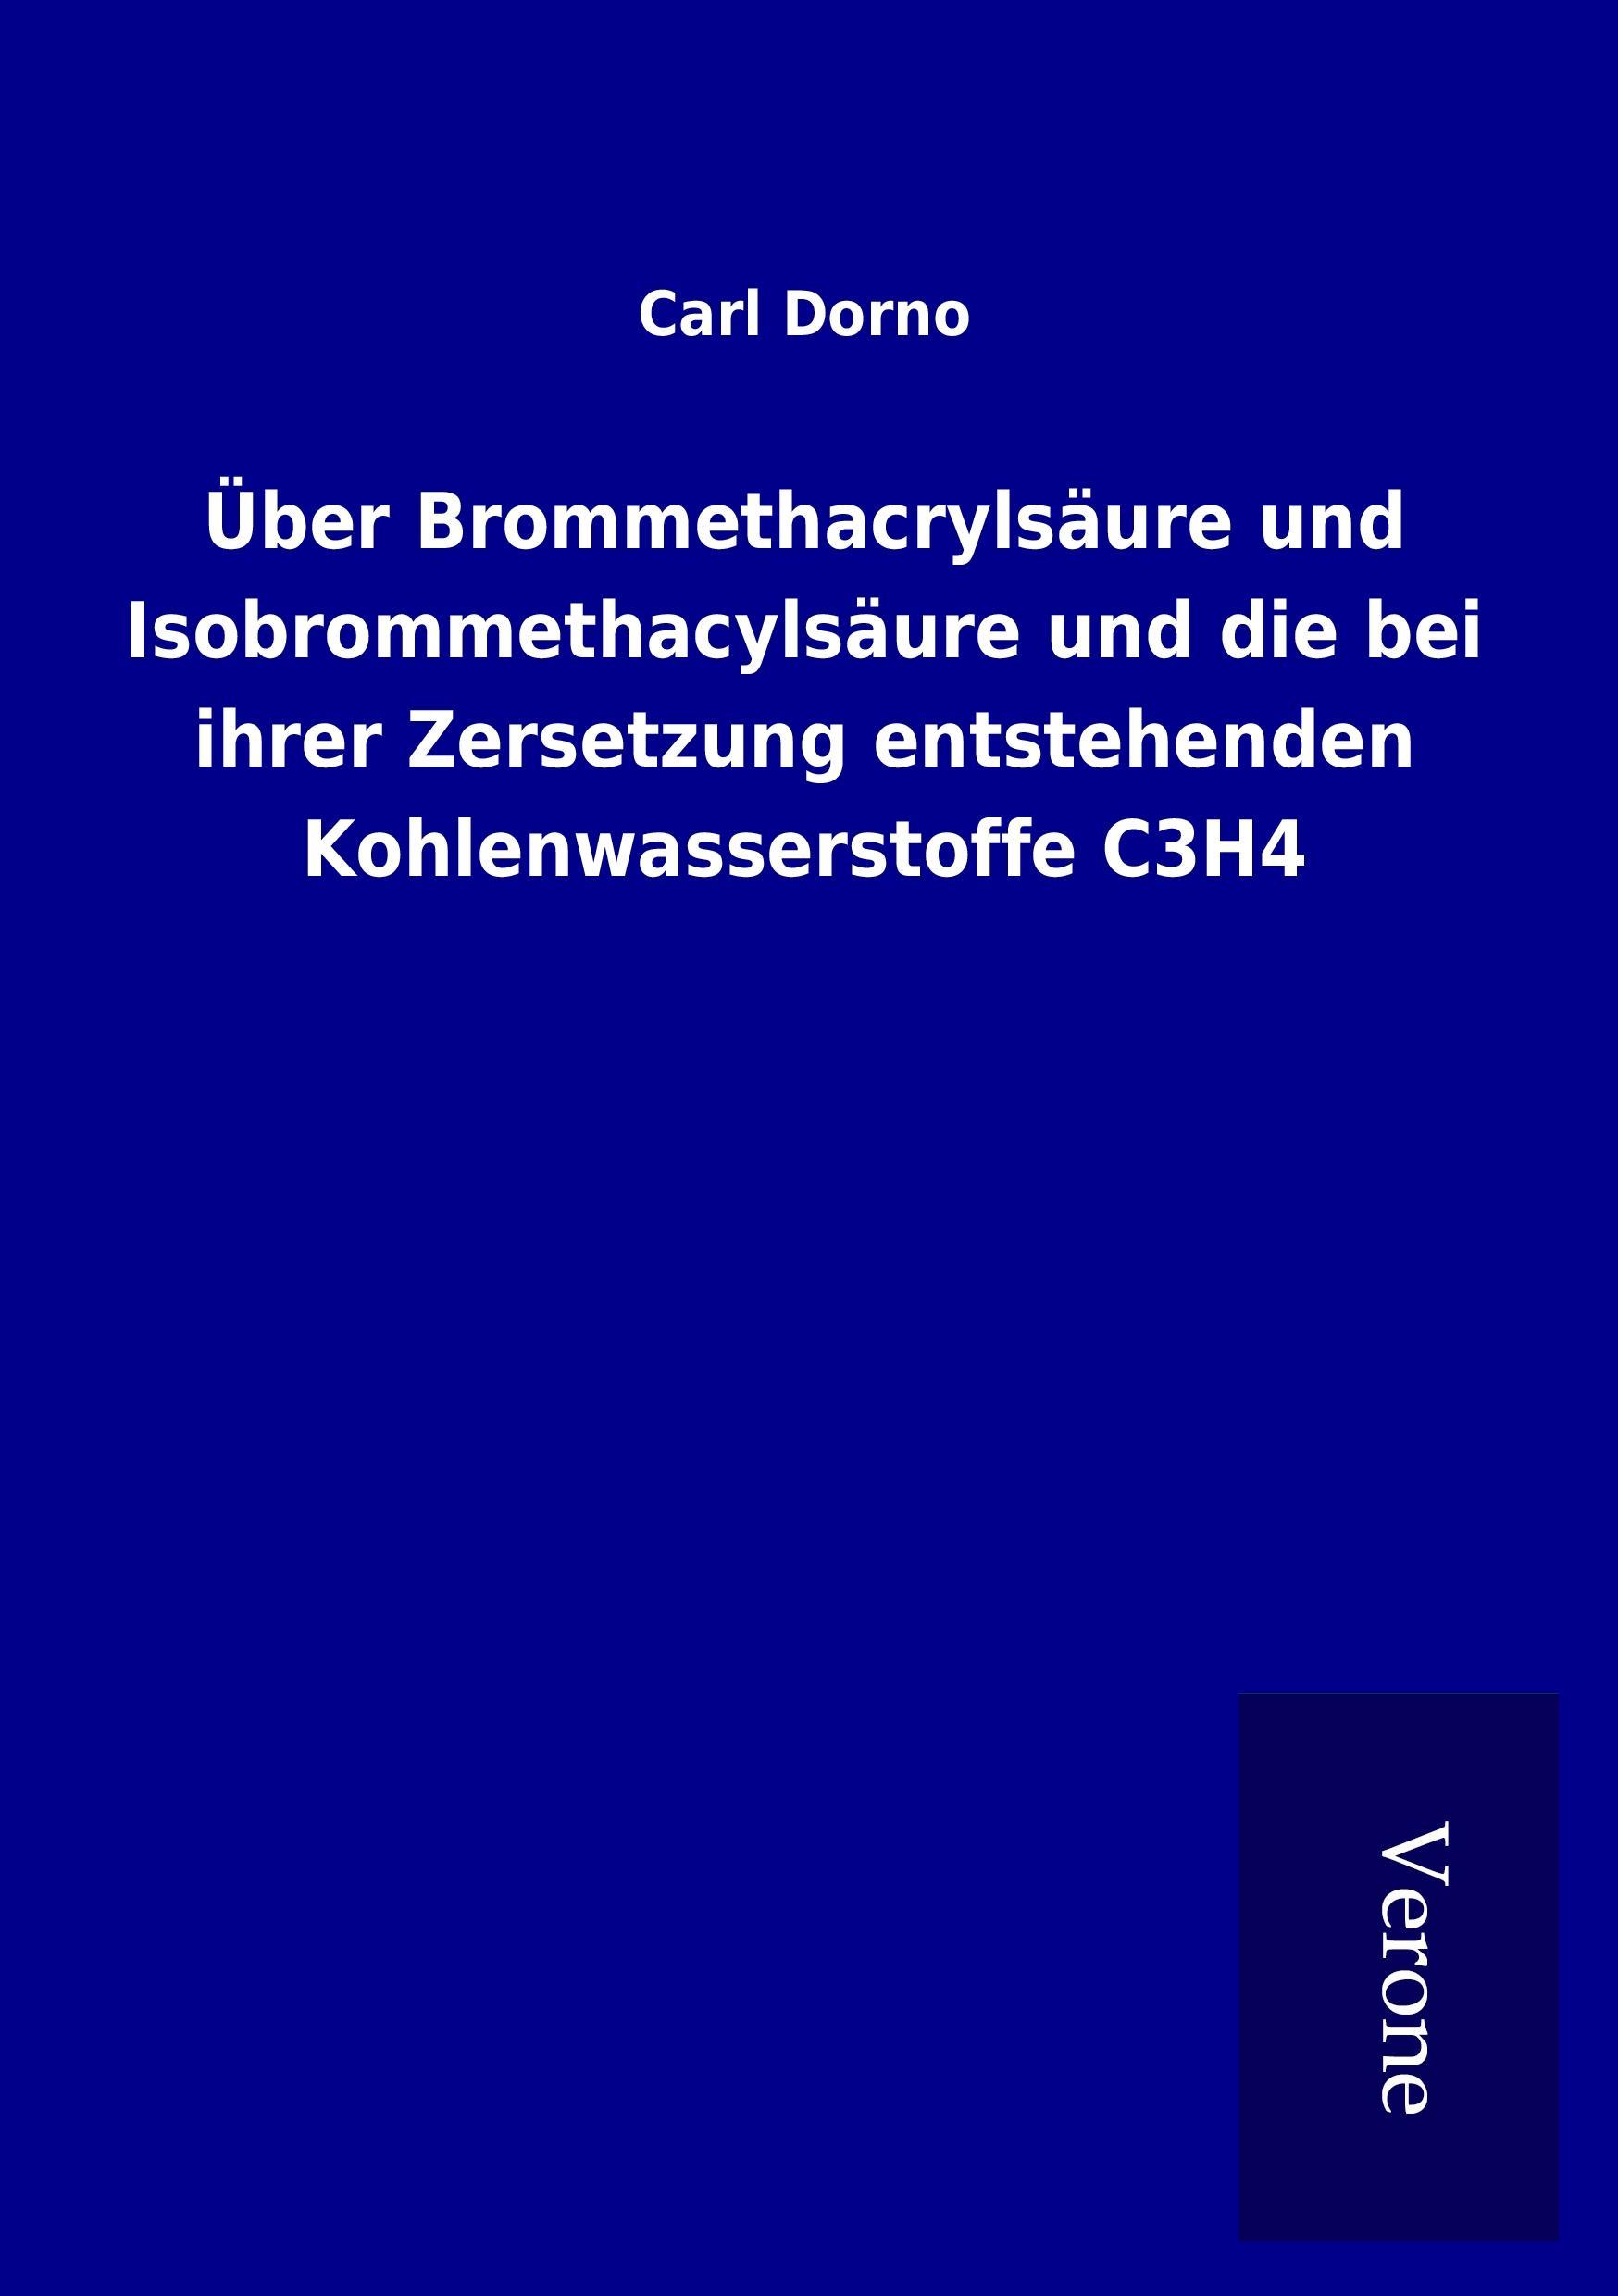 Ueber Brommethacrylsaeure und Isobrommethacylsaeure und die bei ihrer Zersetzung entstehenden Kohlenwasserstoffe C3H4 - Dorno, Carl